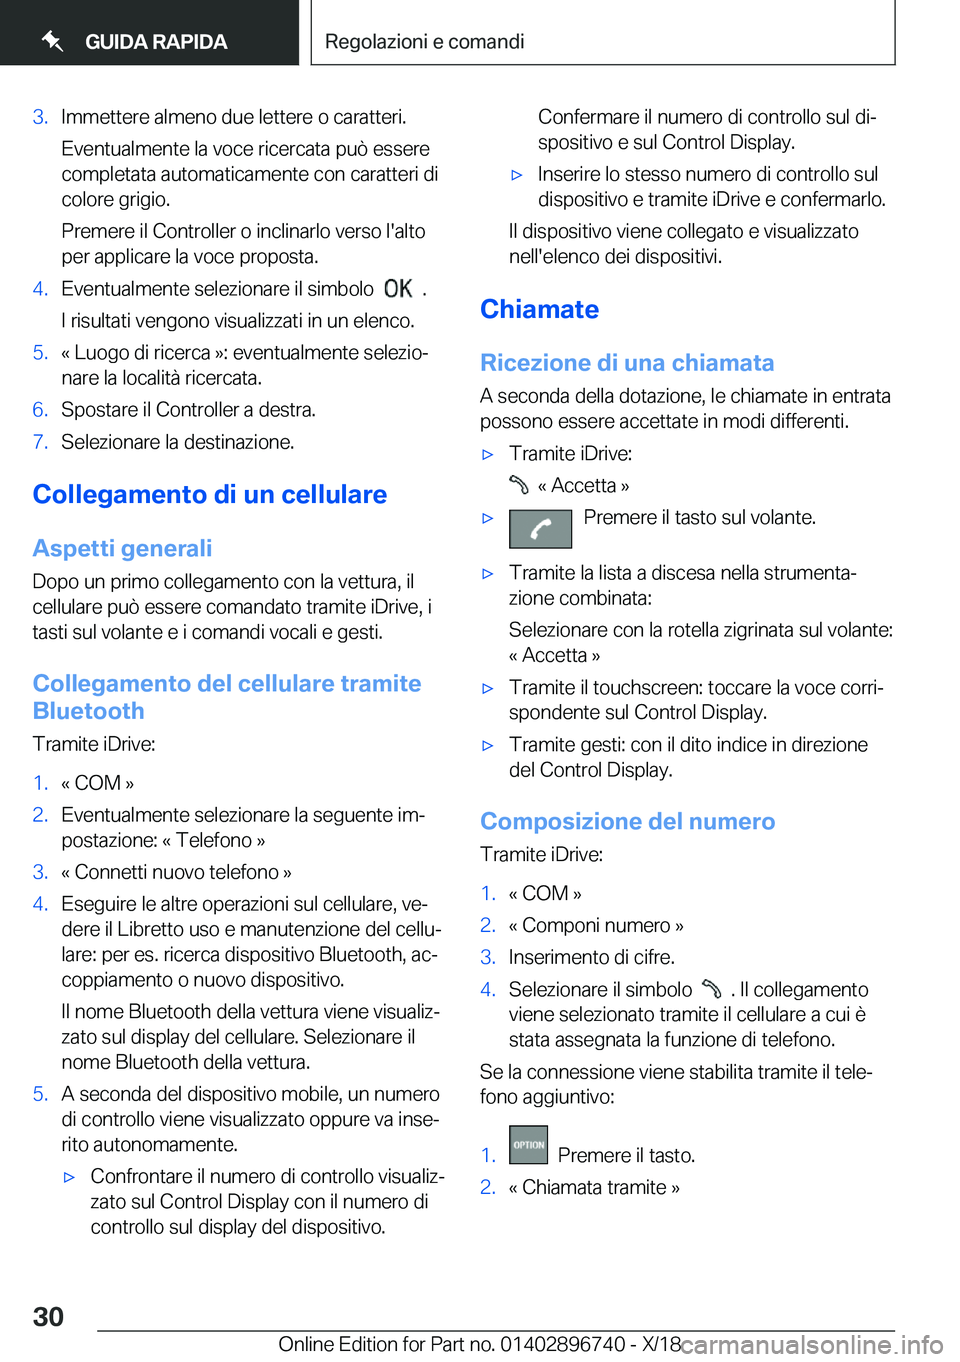 BMW X5 2019  Libretti Di Uso E manutenzione (in Italian) �3�.�I�m�m�e�t�t�e�r�e��a�l�m�e�n�o��d�u�e��l�e�t�t�e�r�e��o��c�a�r�a�t�t�e�r�i�.�E�v�e�n�t�u�a�l�m�e�n�t�e��l�a��v�o�c�e��r�i�c�e�r�c�a�t�a��p�u�